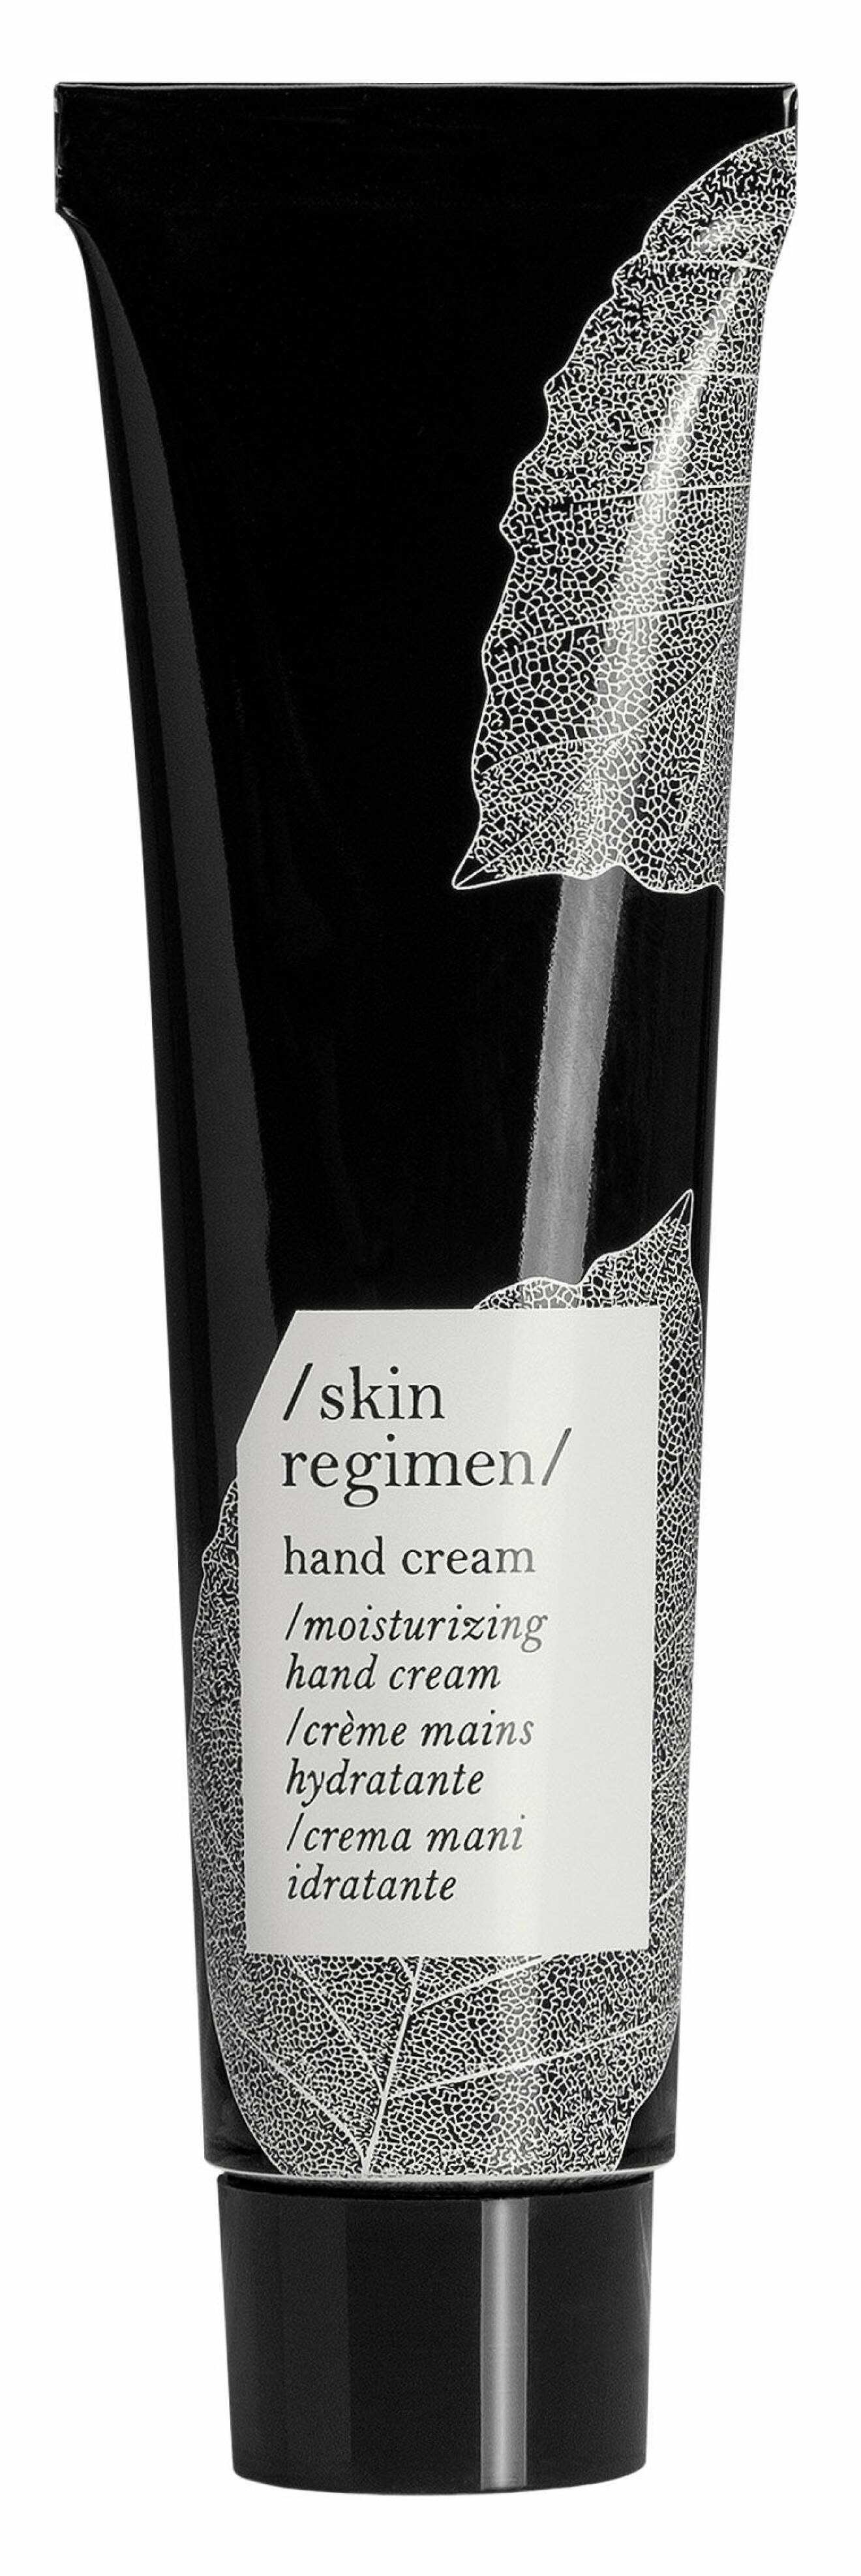 Moisturizing Hand Cream, Skin Regimen